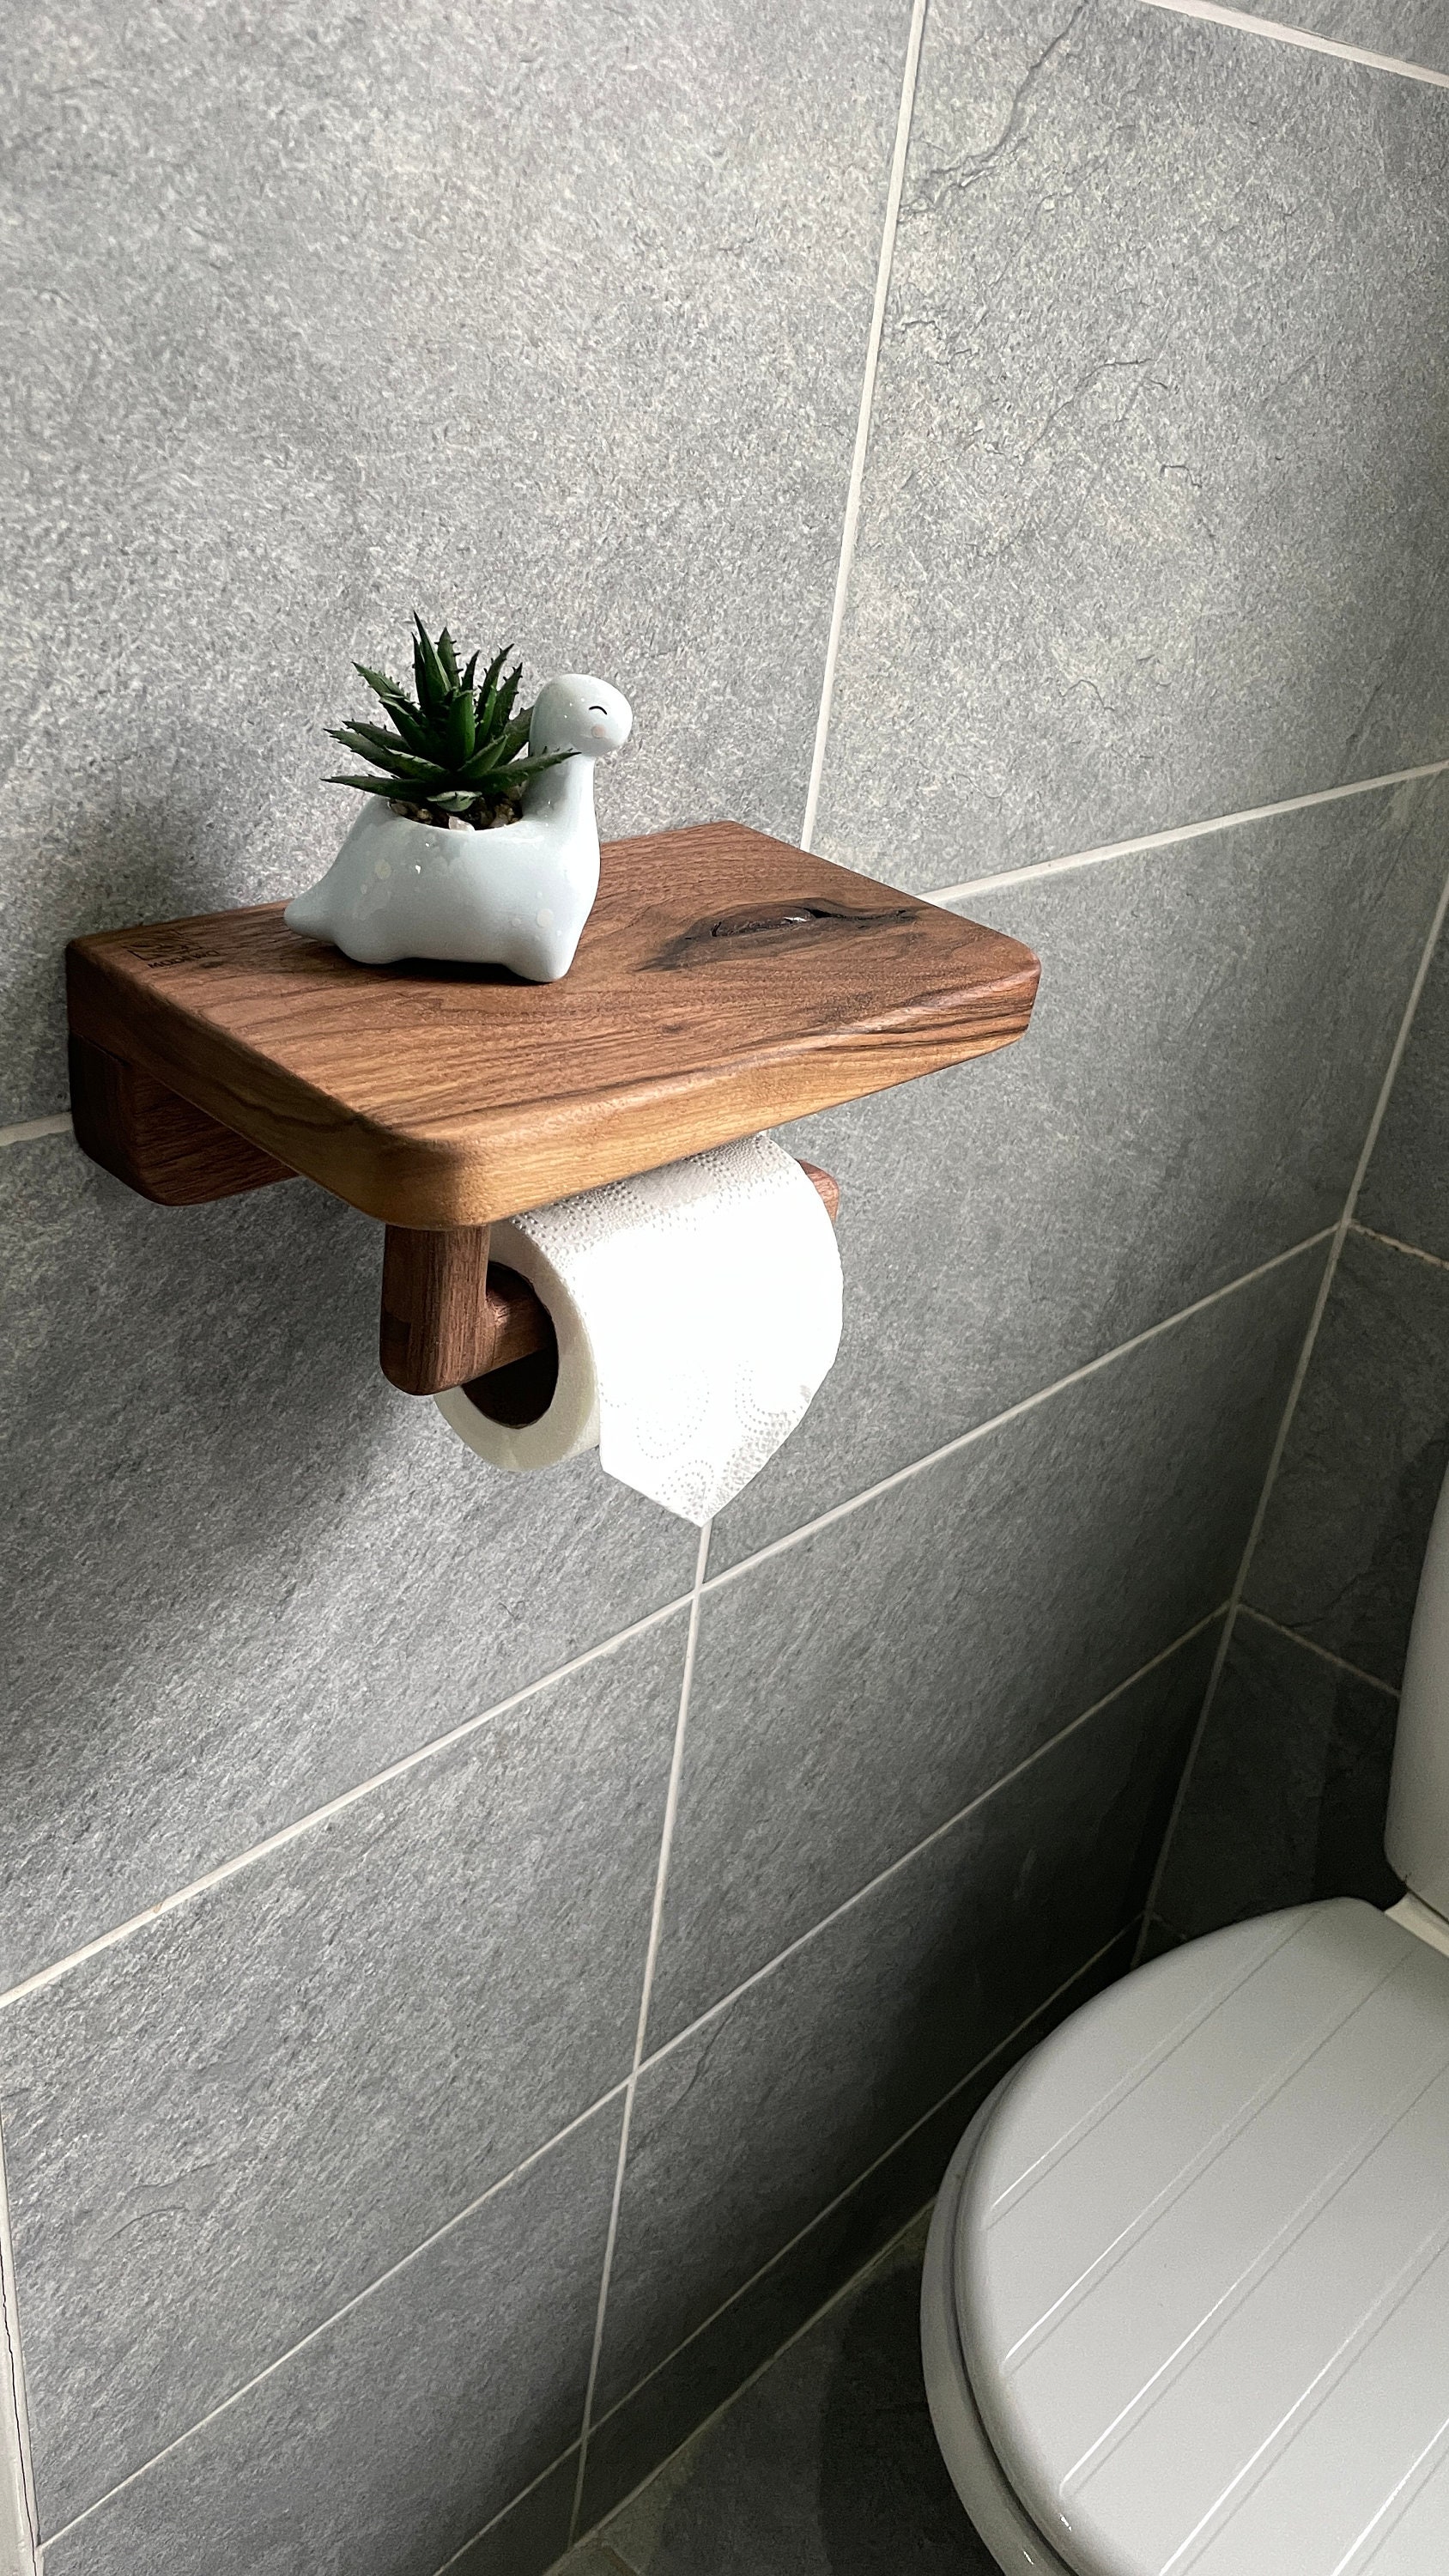 Portarrollos de baño con estante, dispensador de papel higiénico montado en  la pared, madera y aluminio SHUNLI